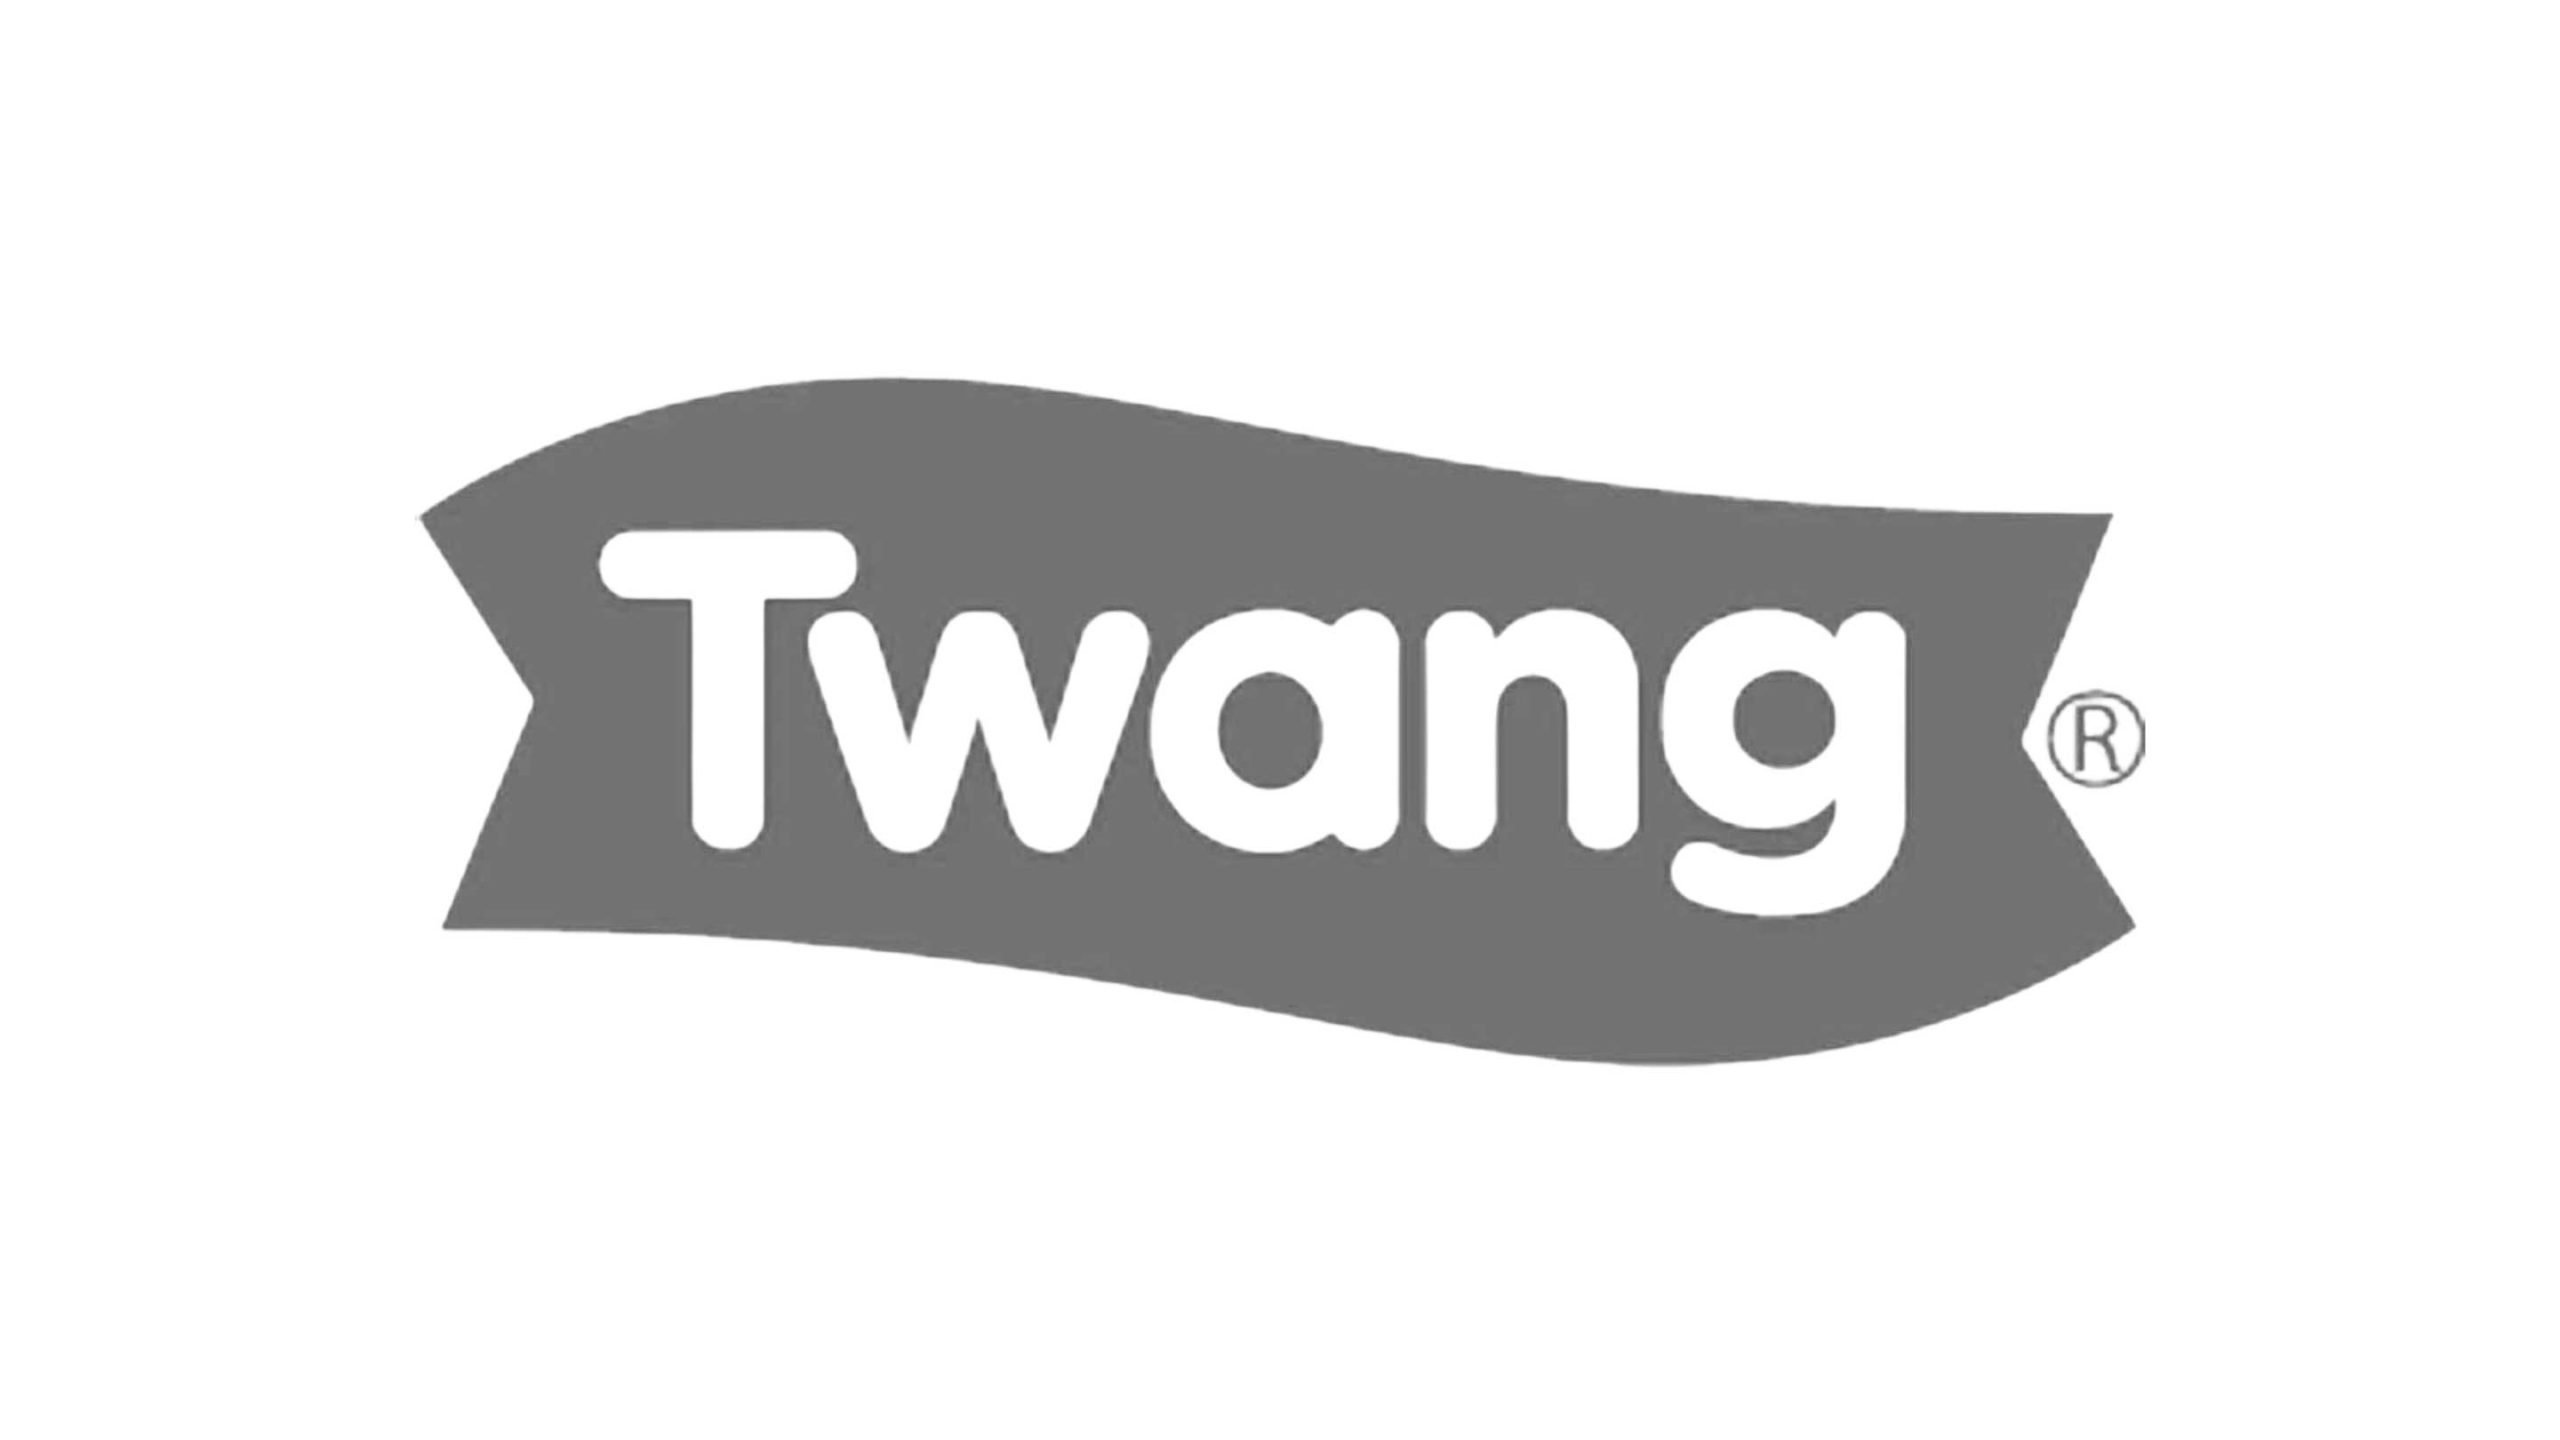 Twang_logo